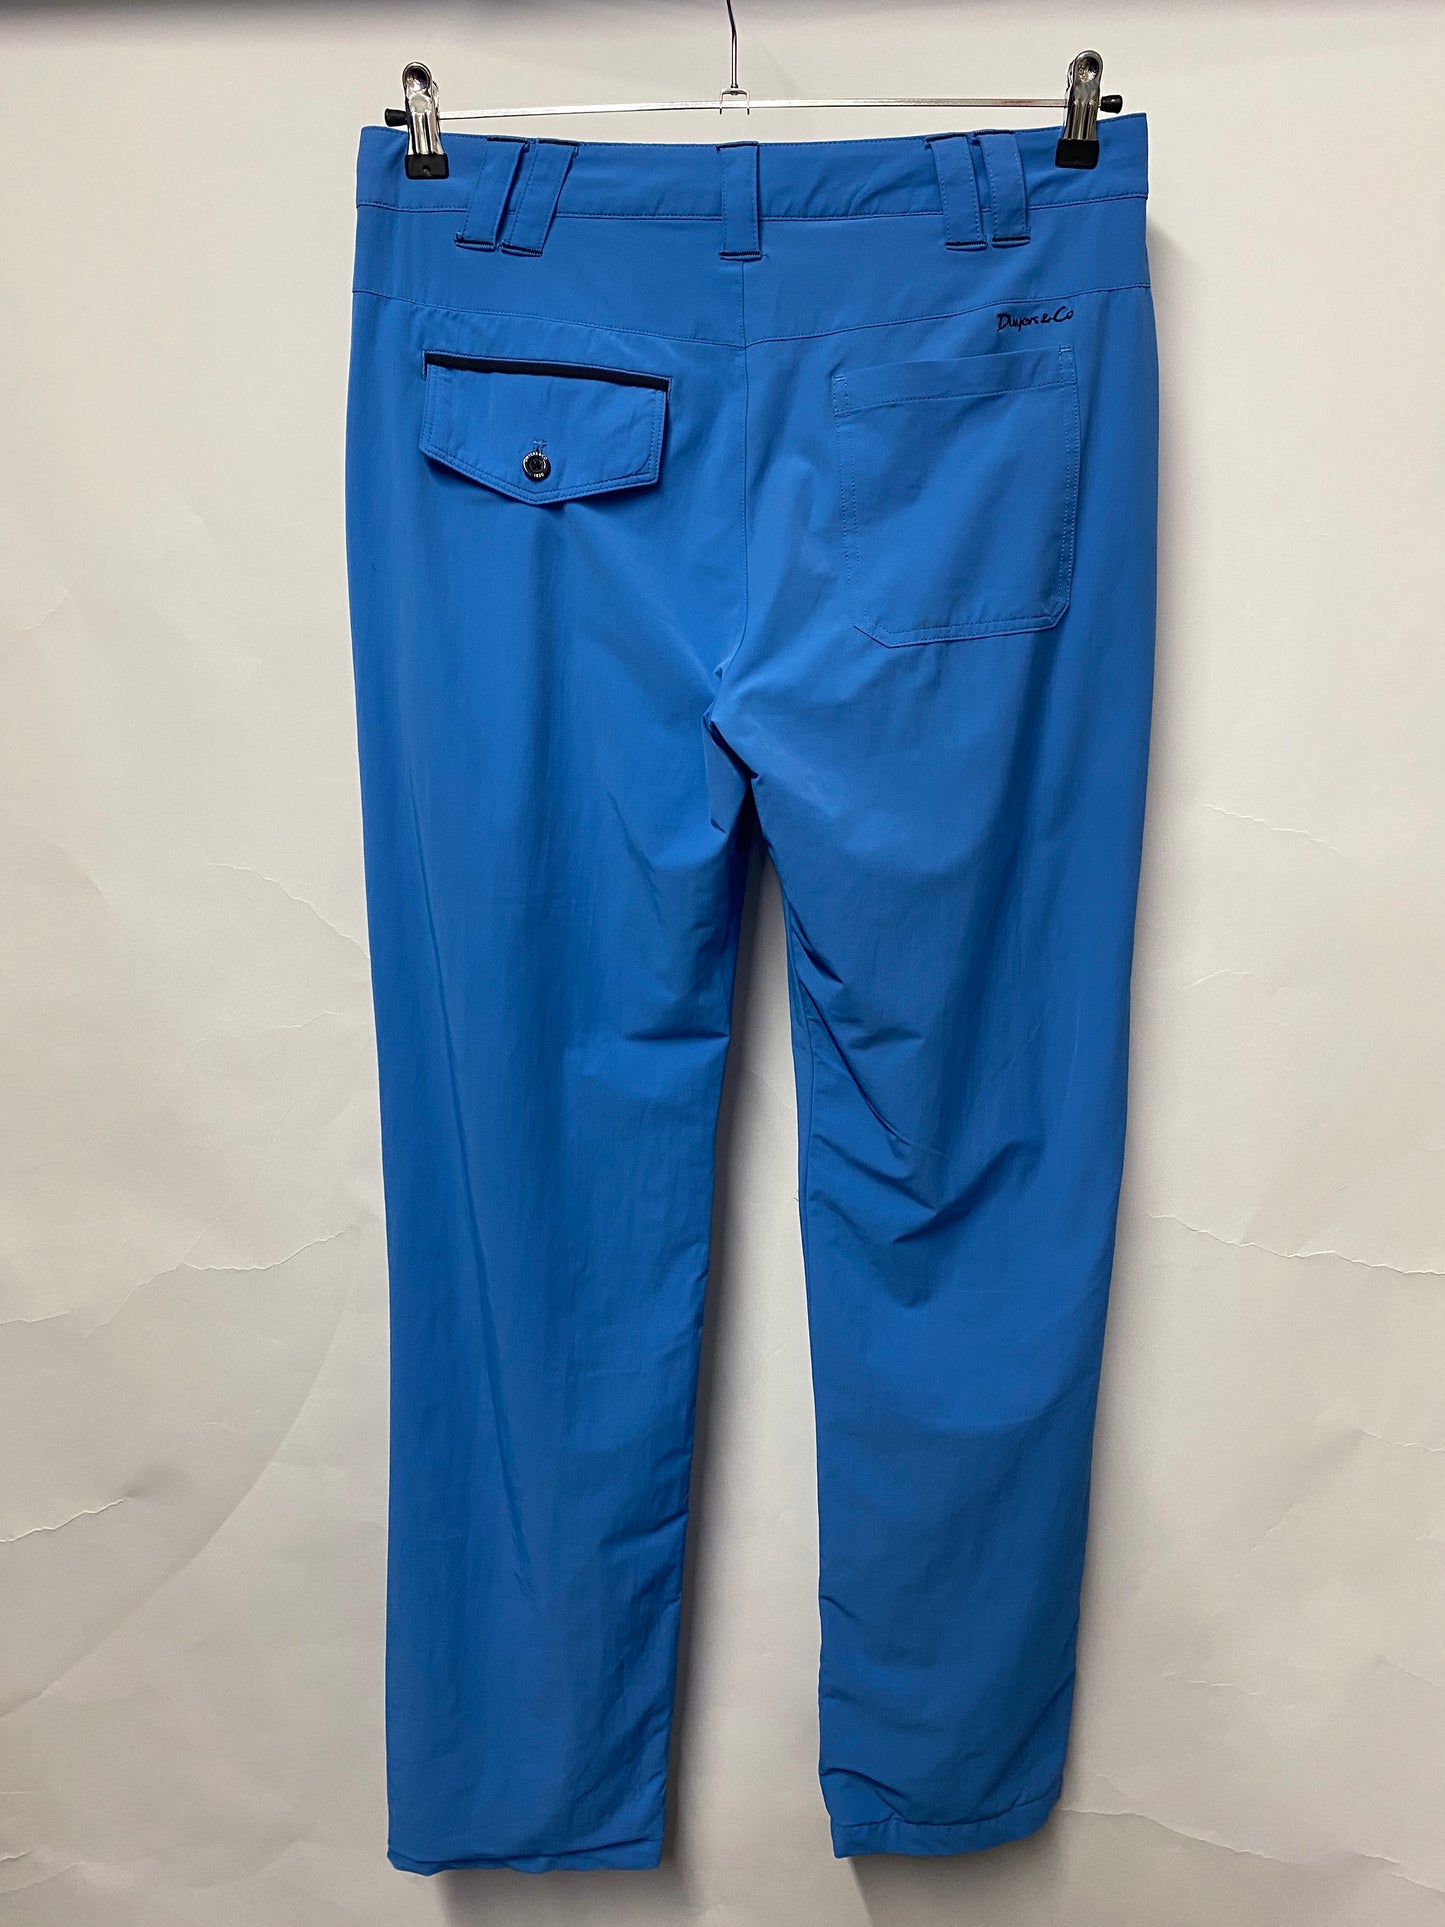 Dwyers & Co Blu Fleece Lined Golf Trousers Large